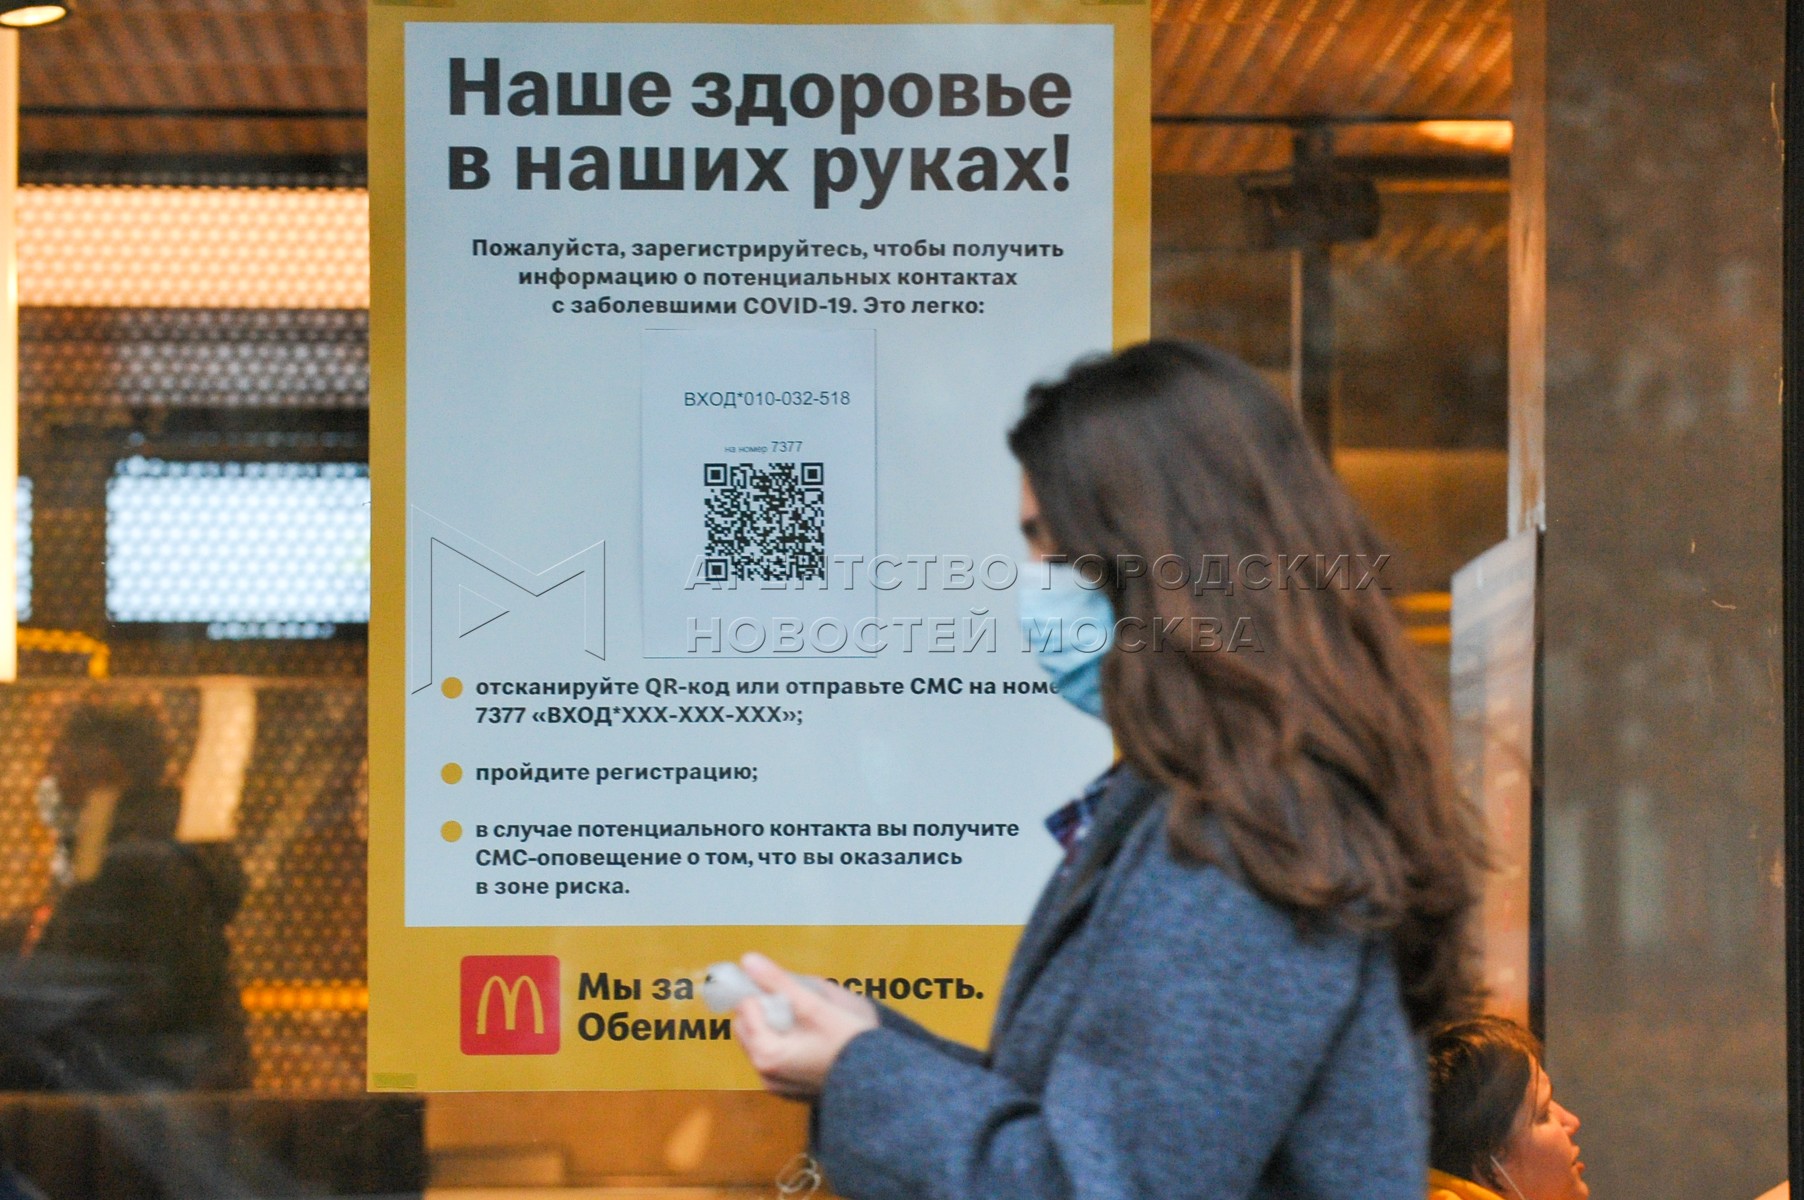 Qr код общественный. QR коды в общественных местах. QR код Введение. QR код в транспорте. QR код в Москве в кафе.